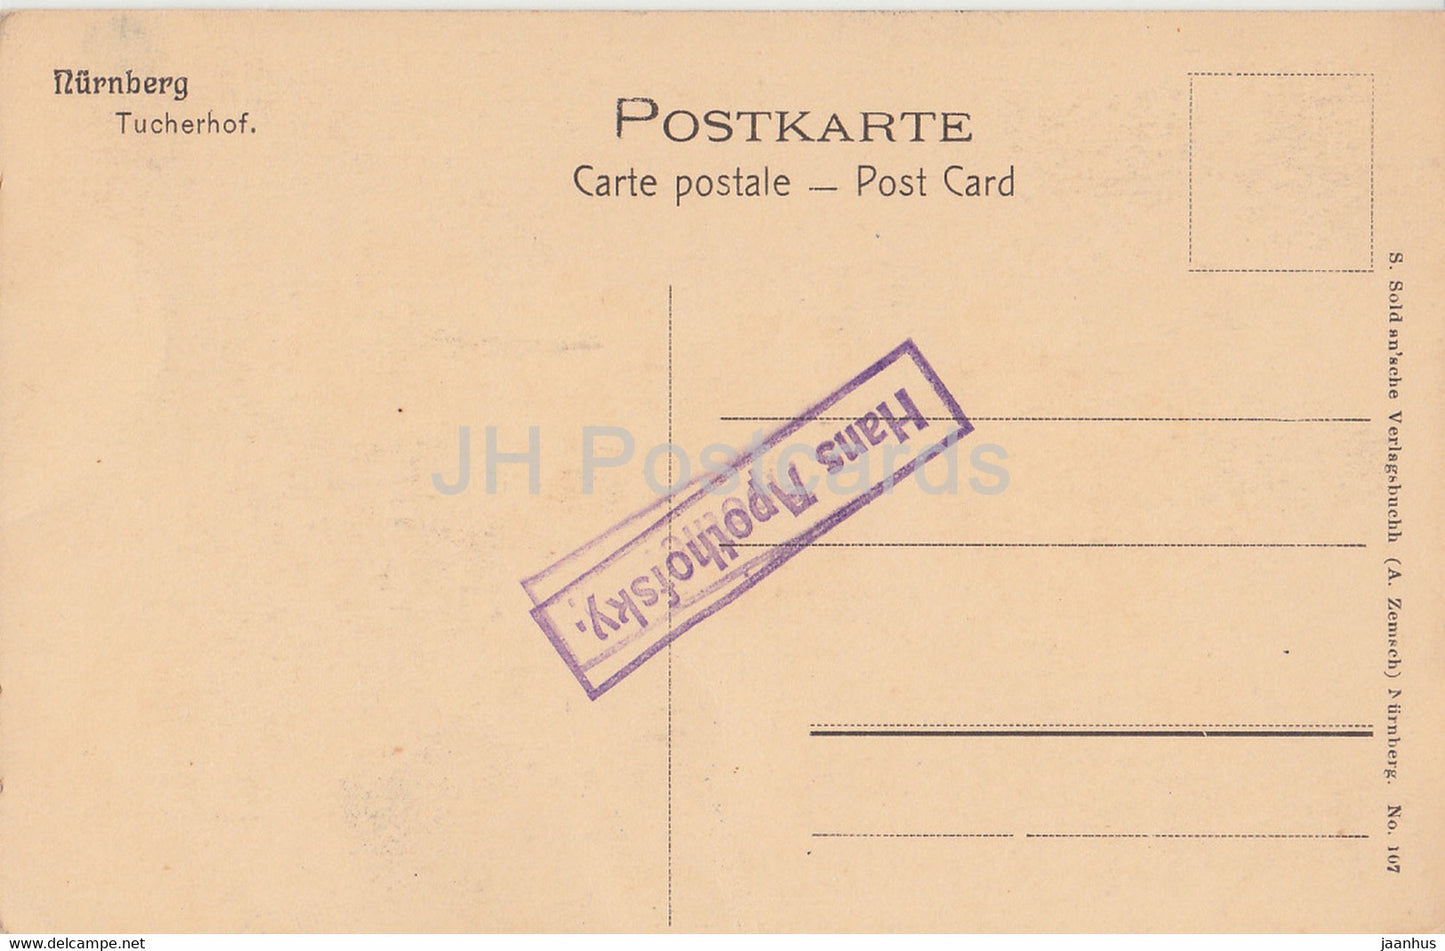 Nurnberg - Tucherhof - old postcard - Germany - unused